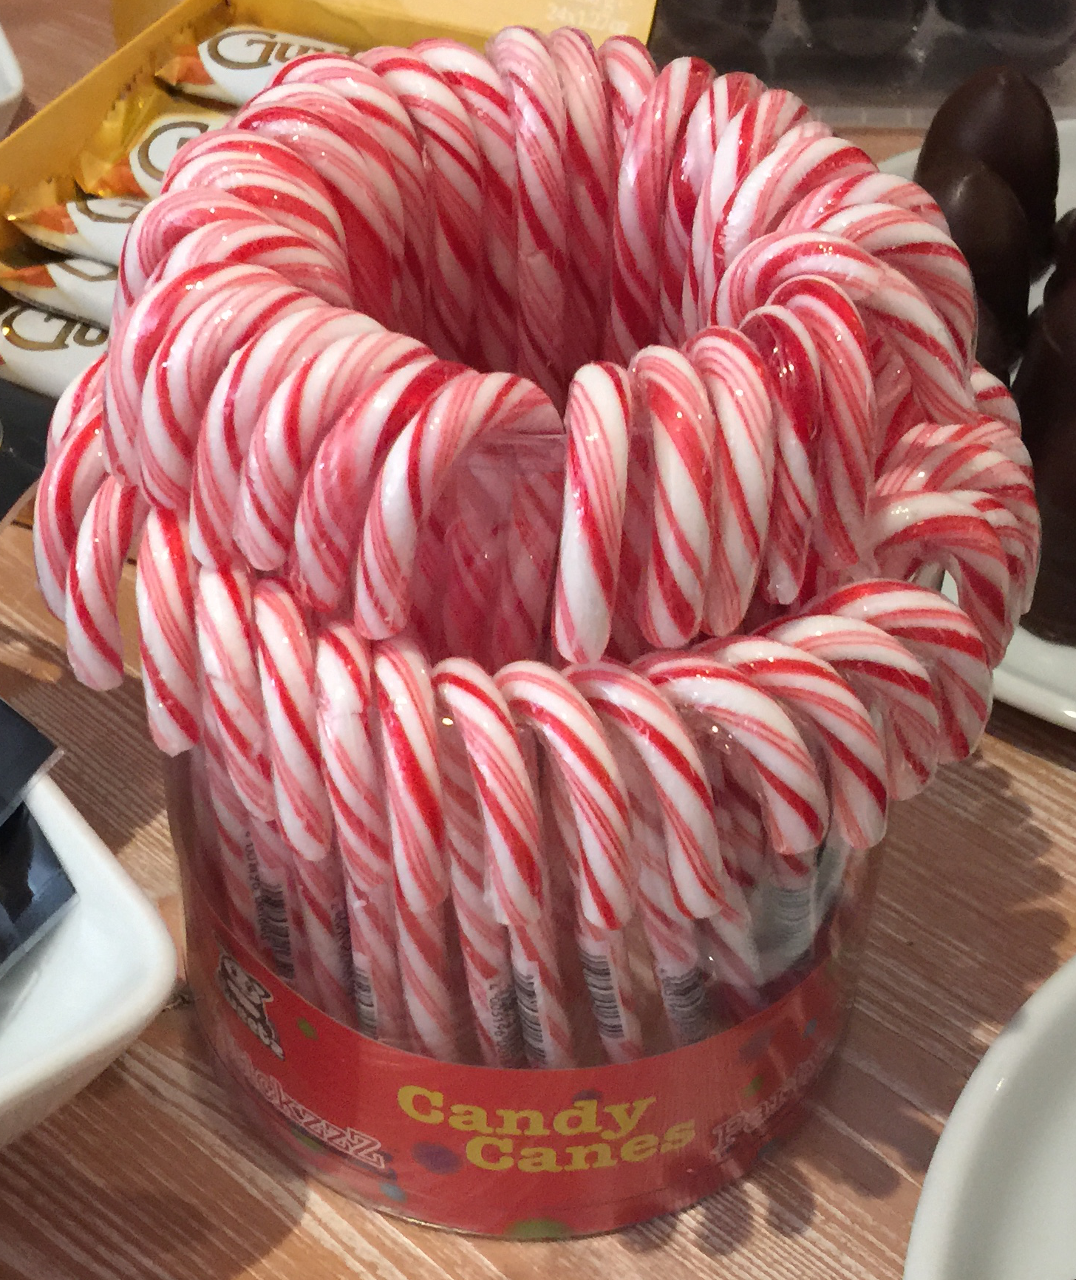 Voll retro, die Zuckerstange: Candy Canes aus den Niederlanden